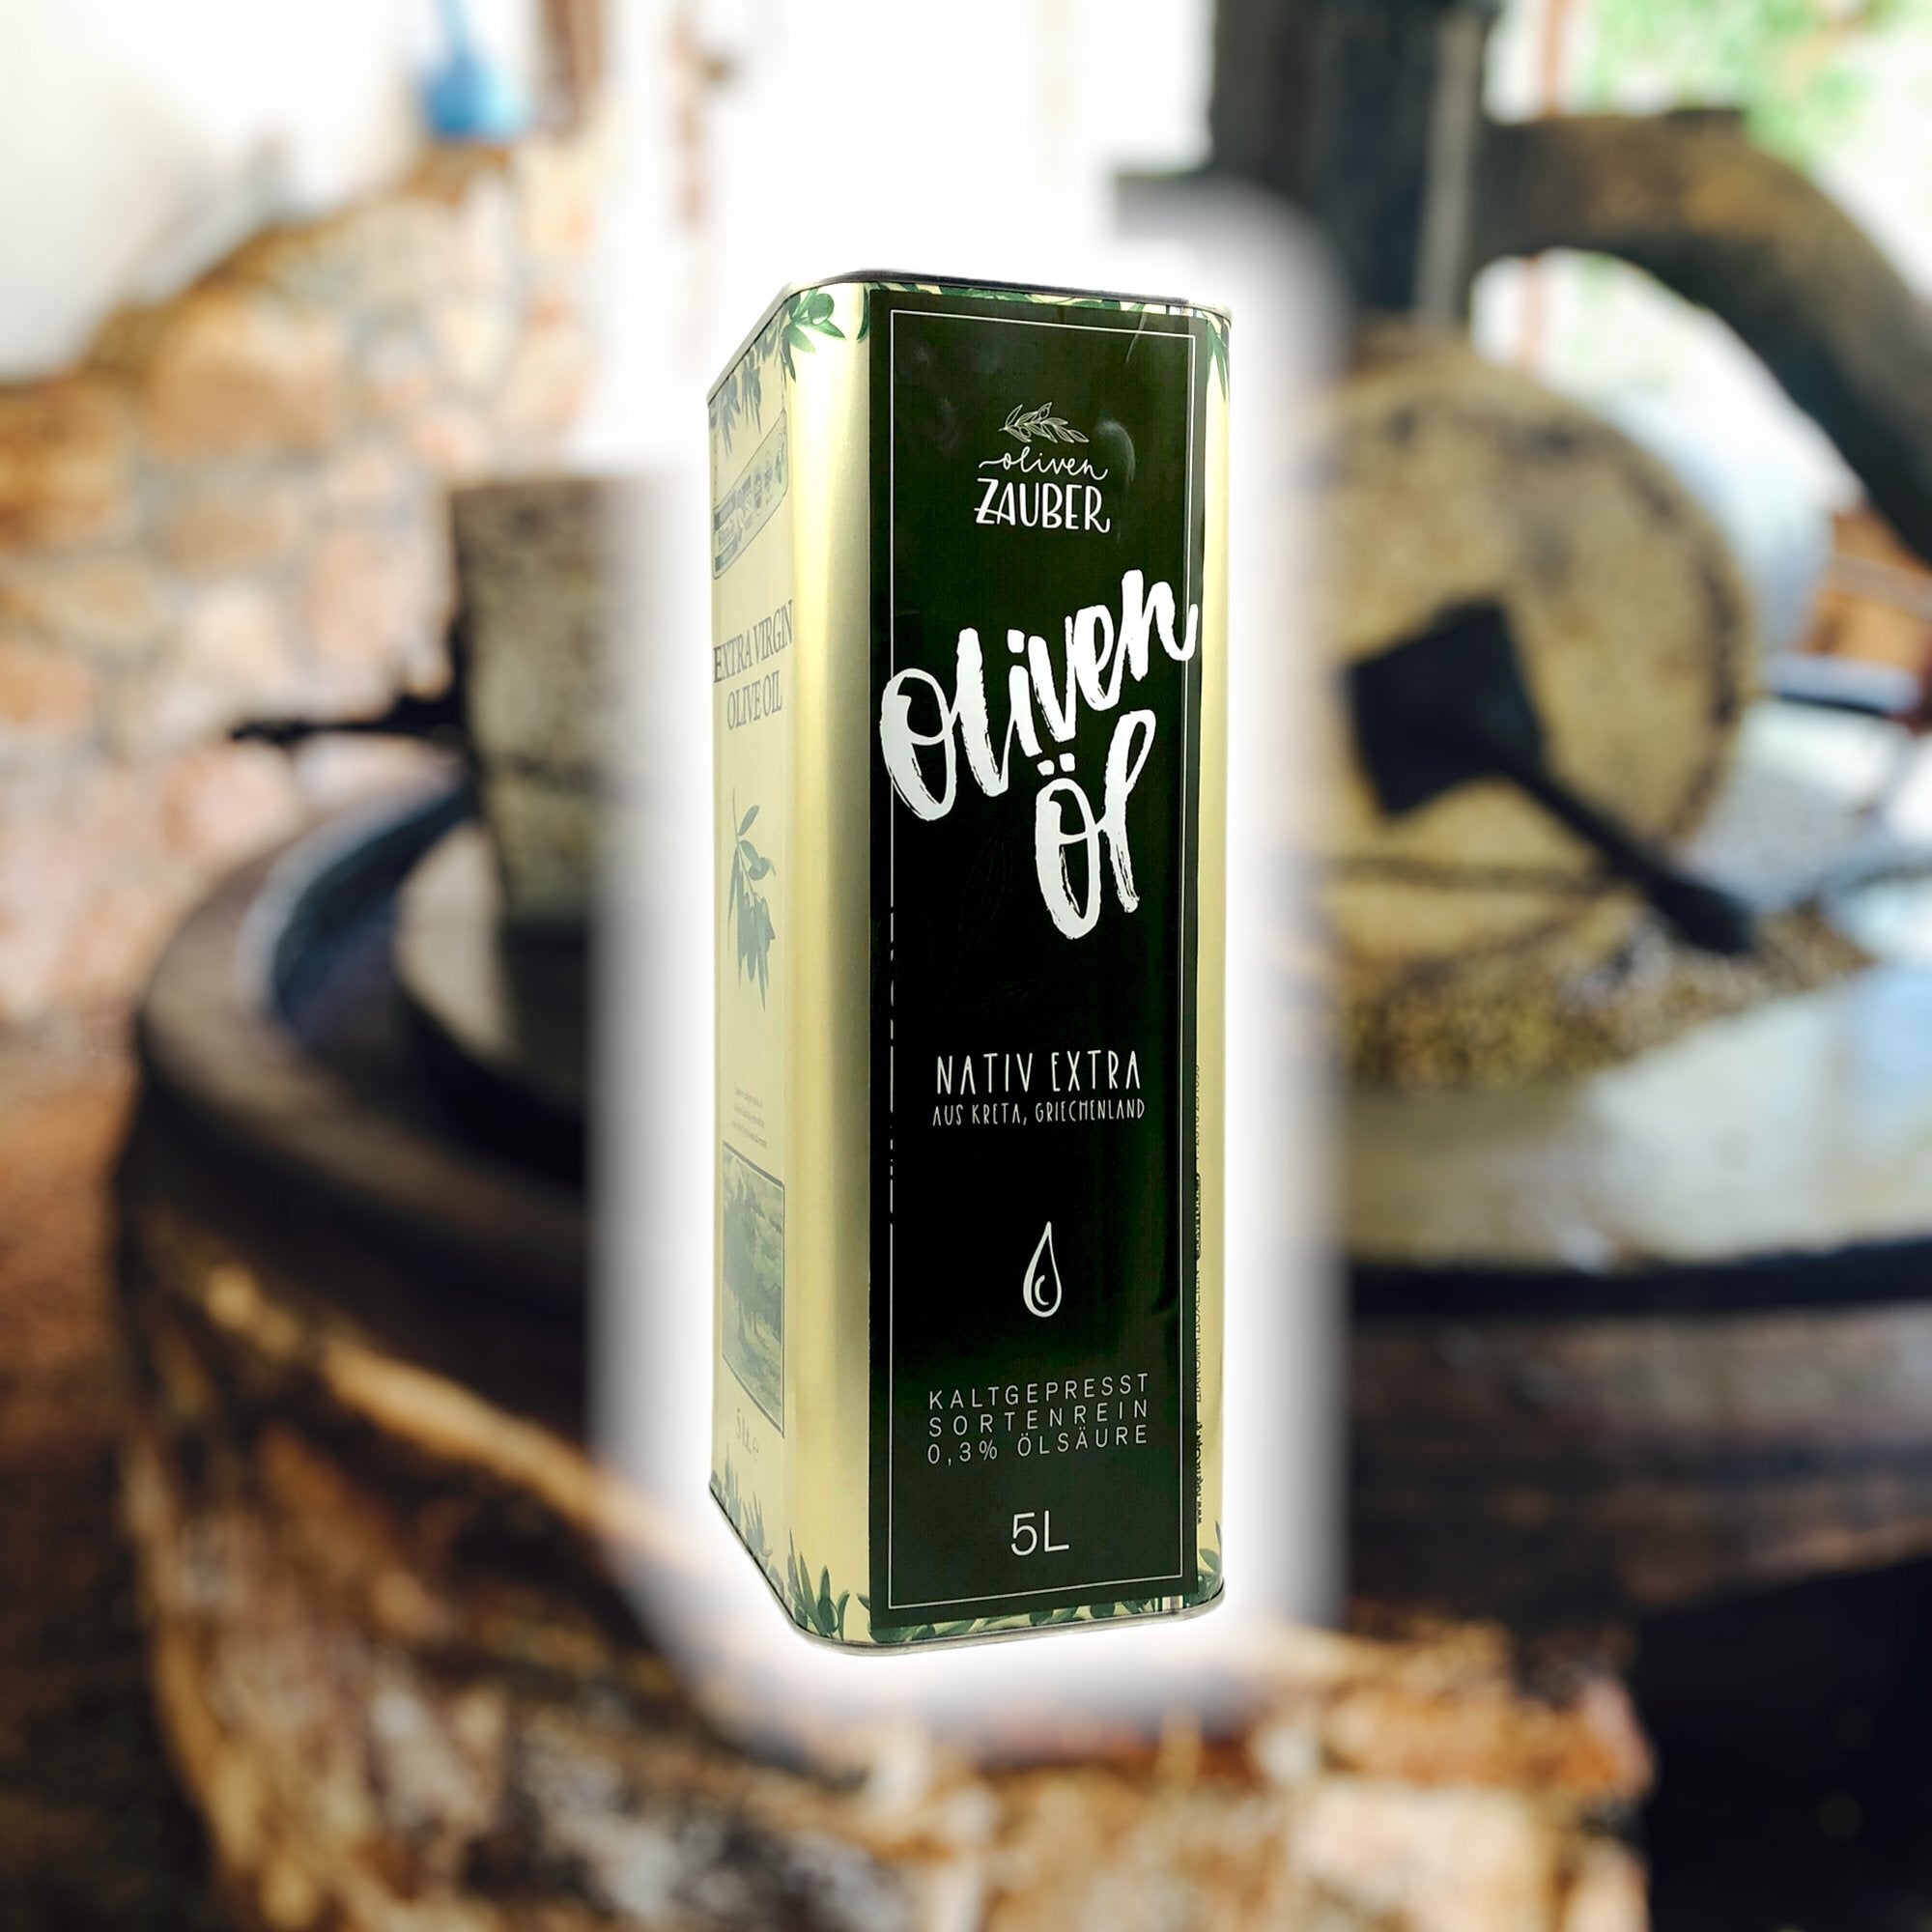 Griechisches Olivenöl nativ extra aus Kreta – 5 Liter Kanister - OlivenZauber - Olivenöl neu erleben